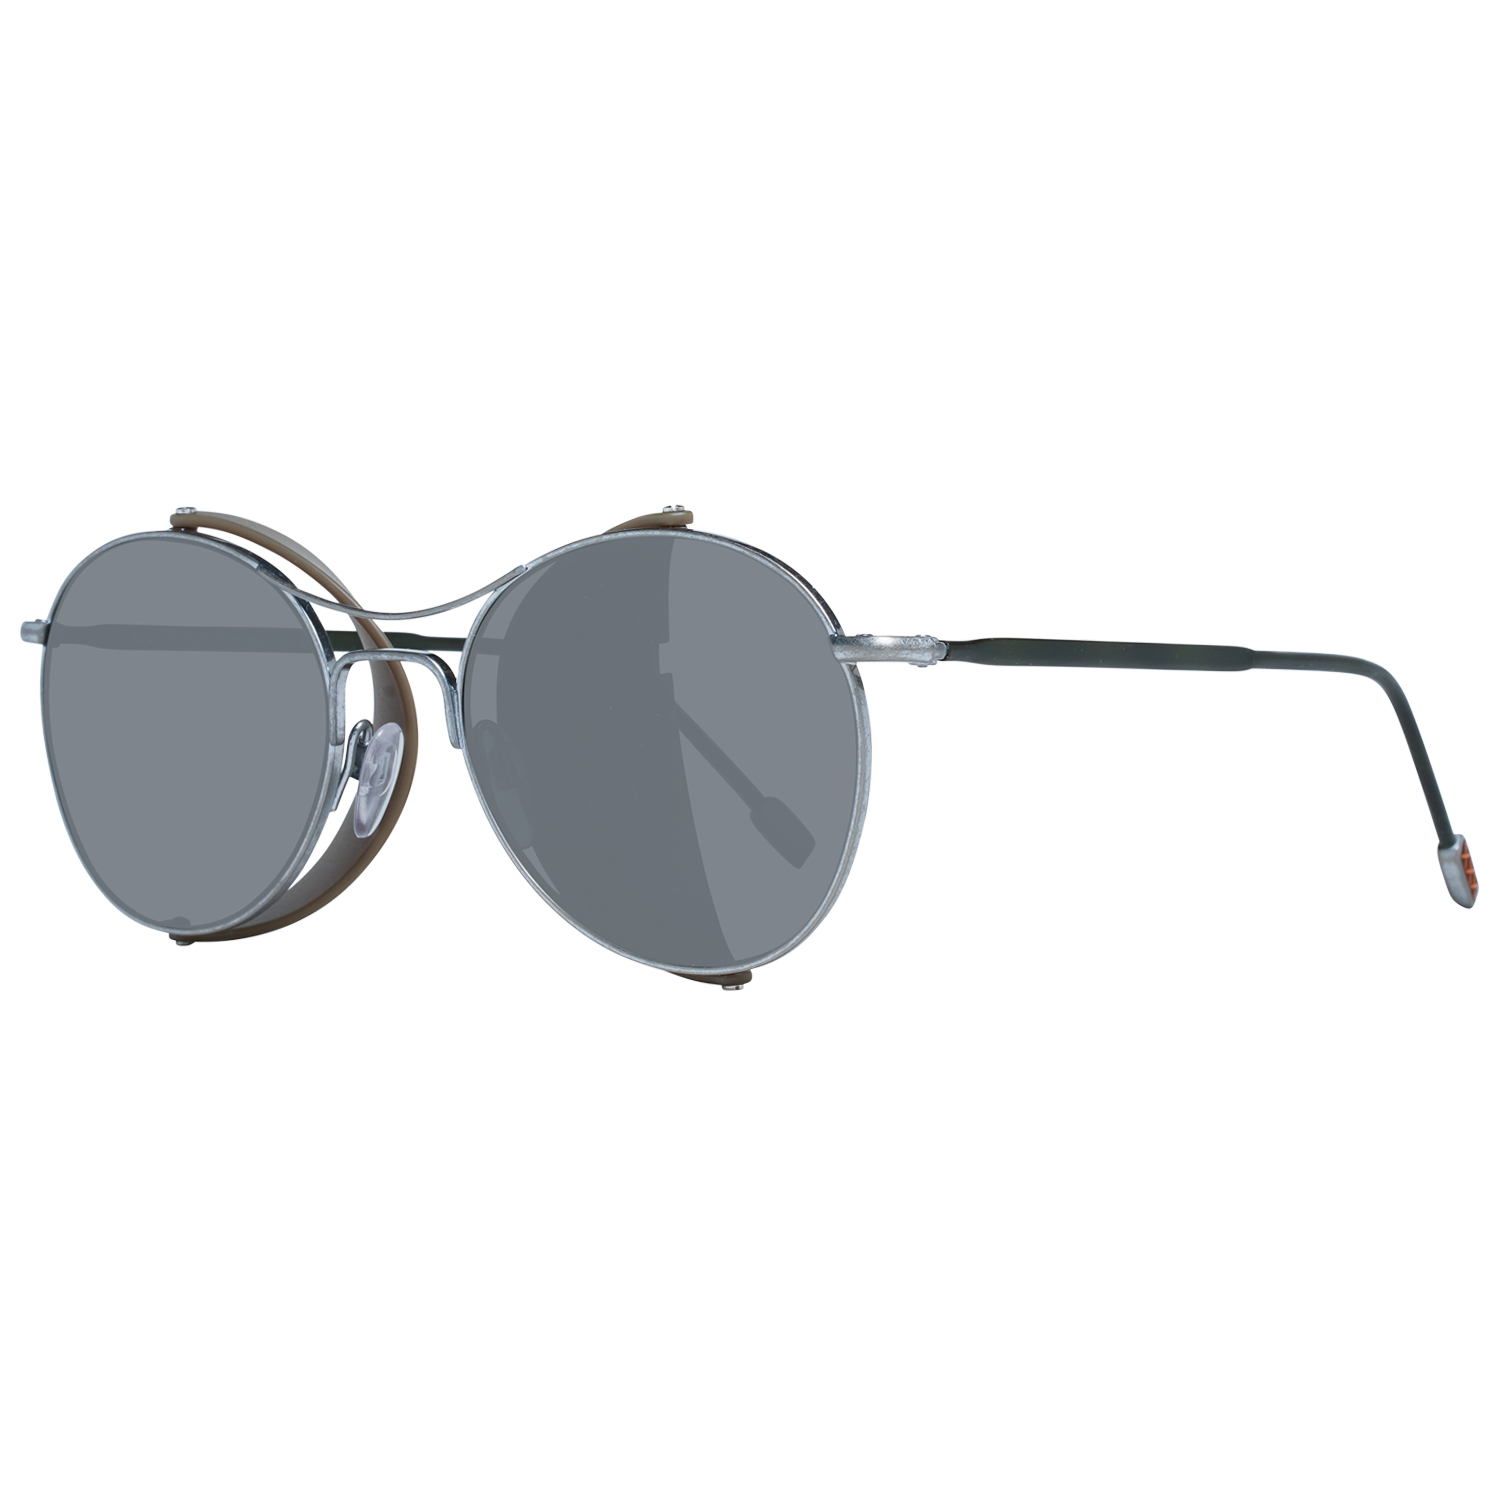 Zegna Couture Sunglasses Zegna Couture Sunglasses ZC0022 52 17A Titanium Eyeglasses Eyewear UK USA Australia 